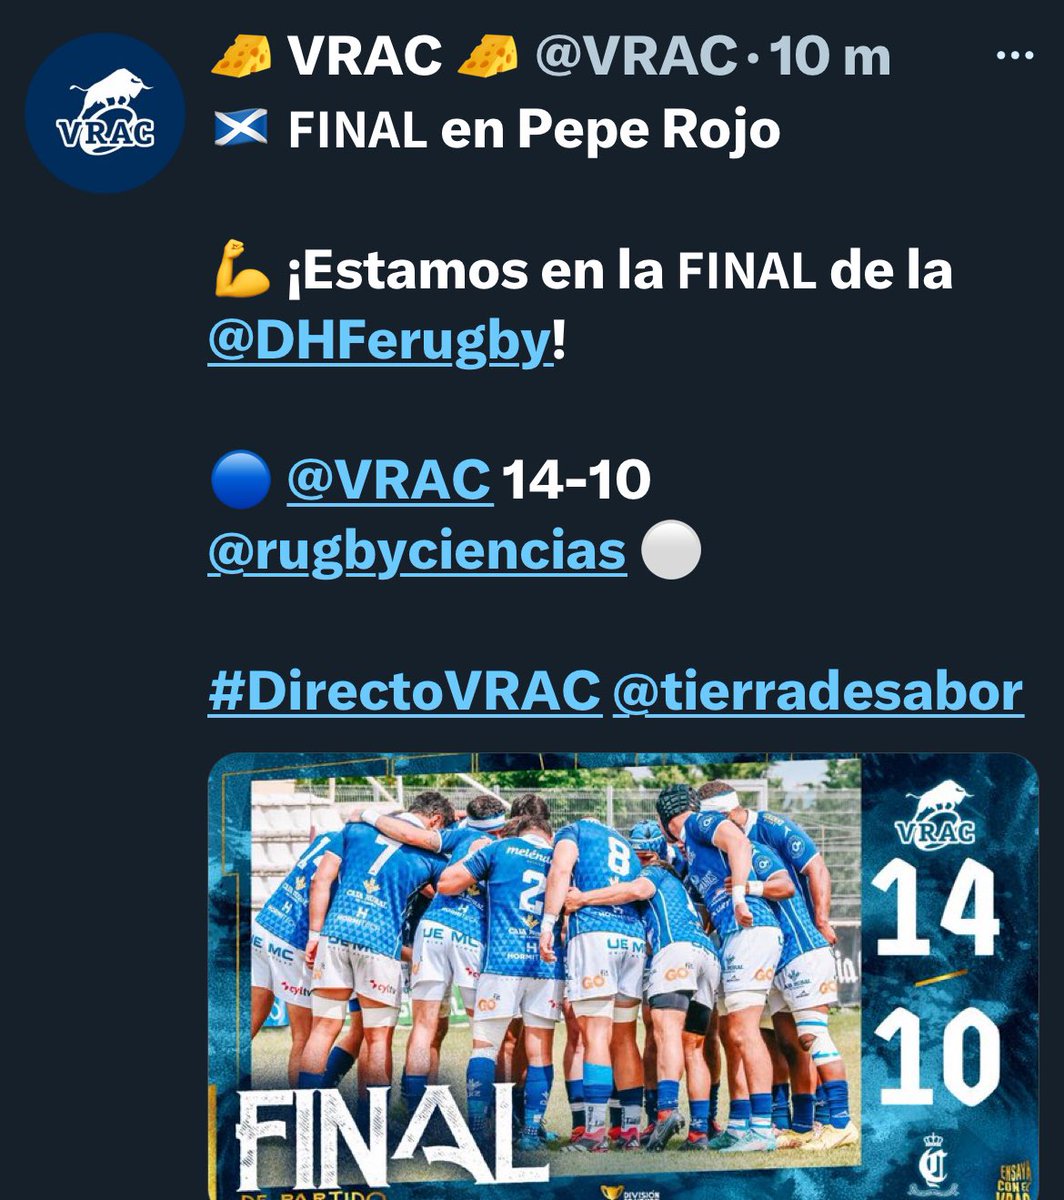 El #rugby de #CastillayLeón nos sigue dando muchas alegrías. Hoy el @VRAC y @RugbyAparejos se han clasificado para disputar la Final de la División de Honor. Bien por el @Chami_Rugby que ha disputado hasta el final. ¡Enhorabuena y suerte para ambos!